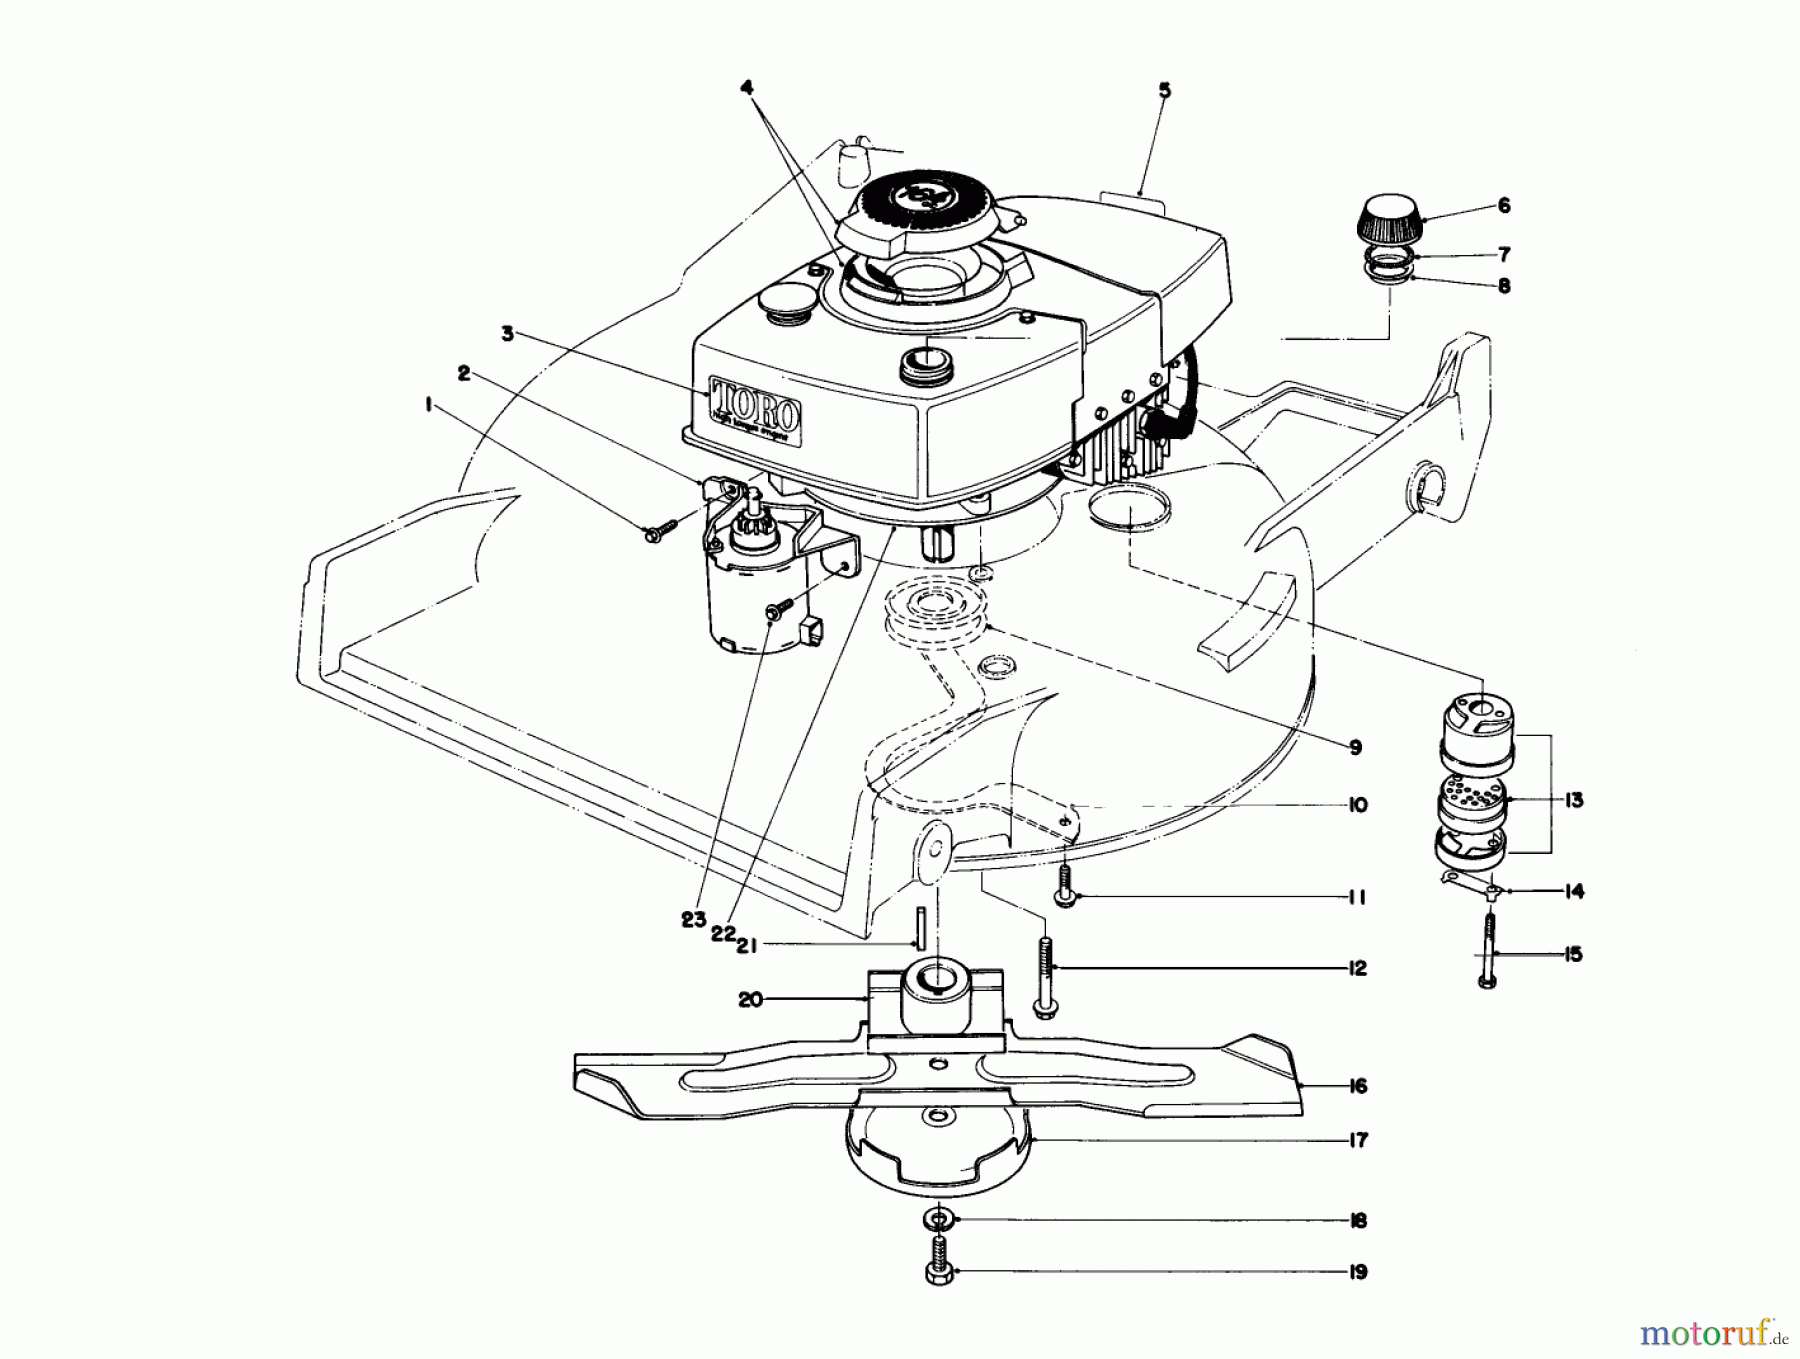  Toro Neu Mowers, Walk-Behind Seite 1 20790 - Toro Lawnmower, 1979 (9000001-9999999) ENGINE ASSEMBLY